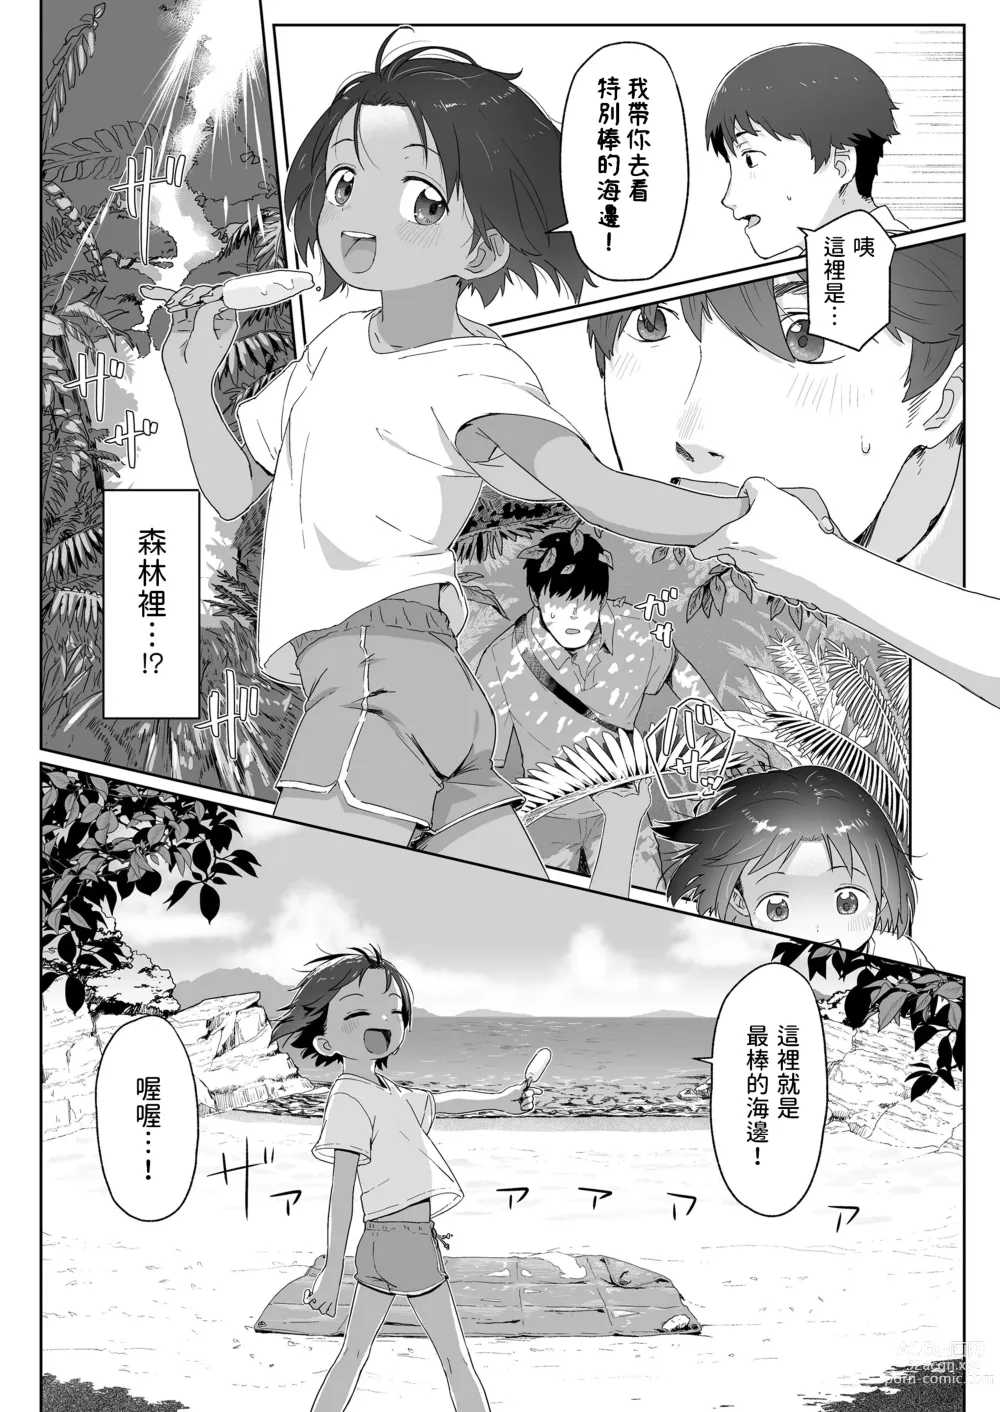 Page 5 of manga Ano Natsu no Hanashi